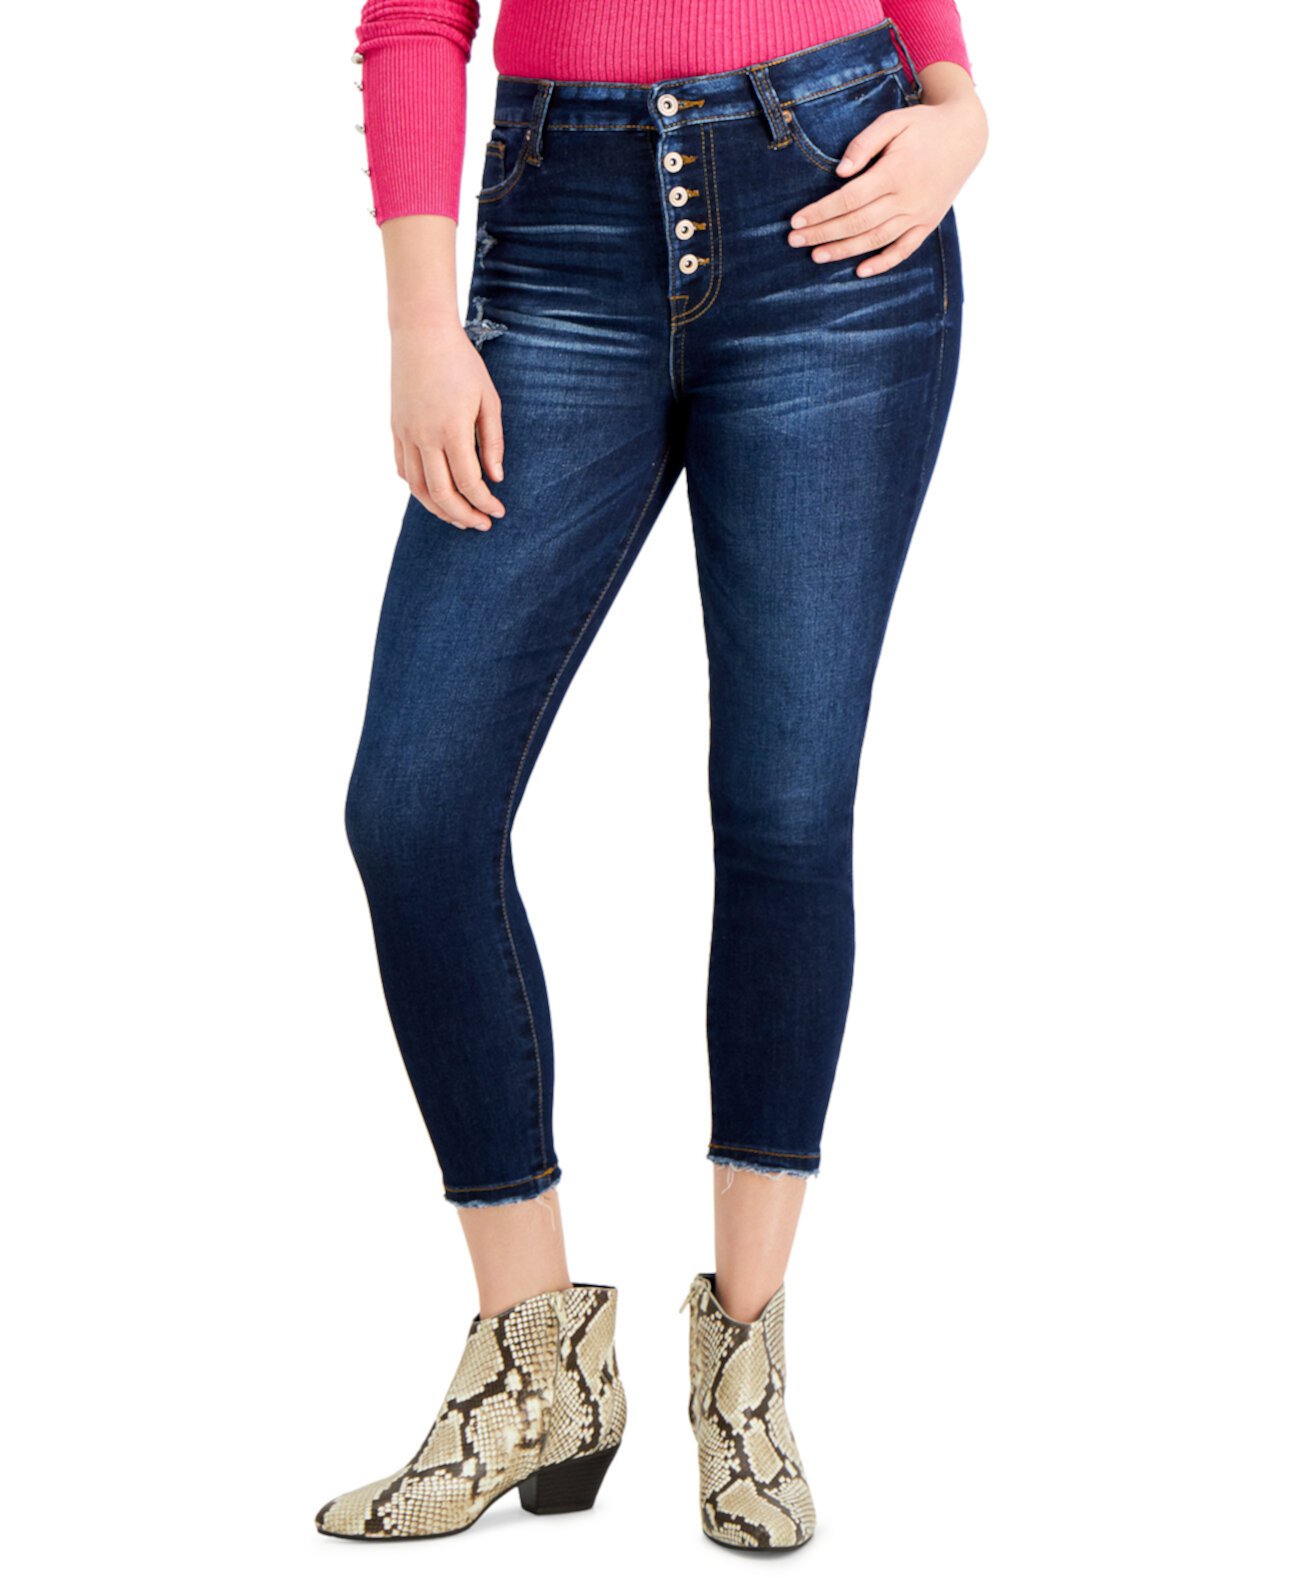 Укороченные джинсы-скинни с высокой посадкой для юниоров Celebrity Pink